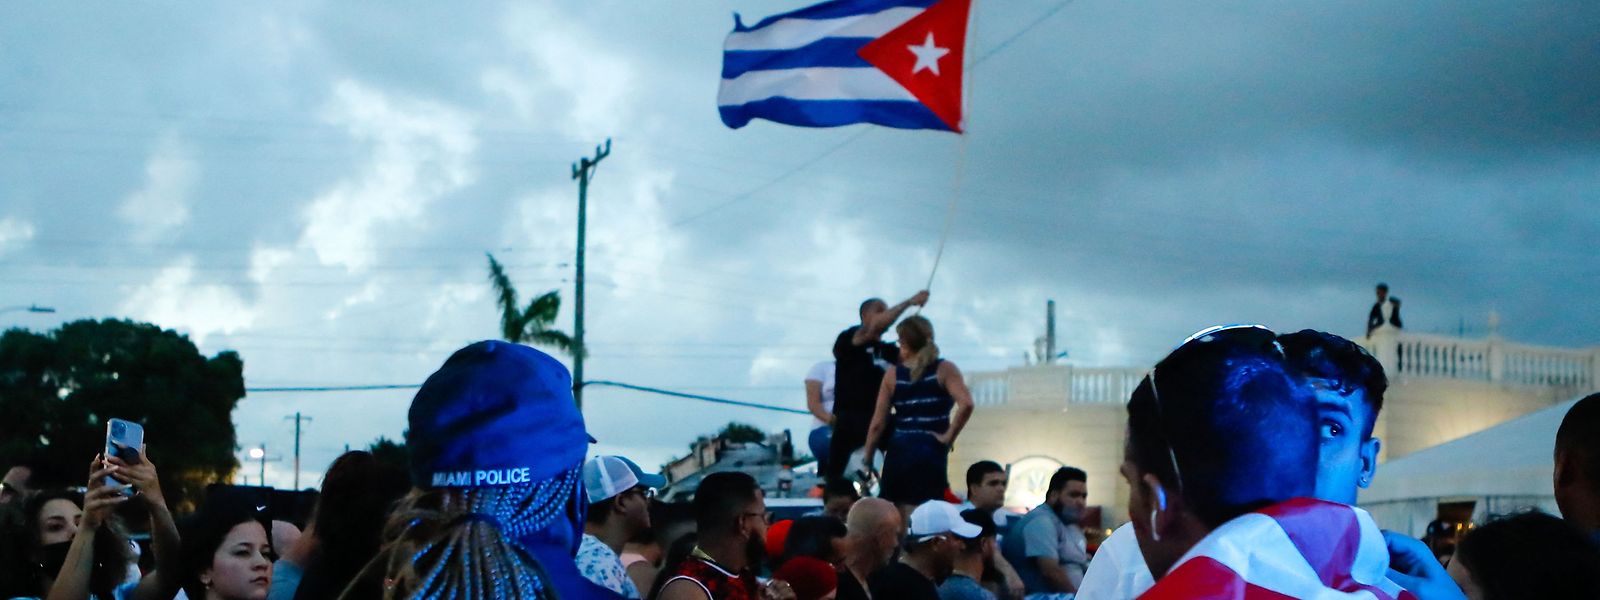 Das hat es in dem autoritären Karibikstaat Kuba seit Jahrzehnten nicht mehr gegeben. Menschen gehen auf die Straße und demonstrieren gegen Mangelwirtschaft und Unterdrückung. 